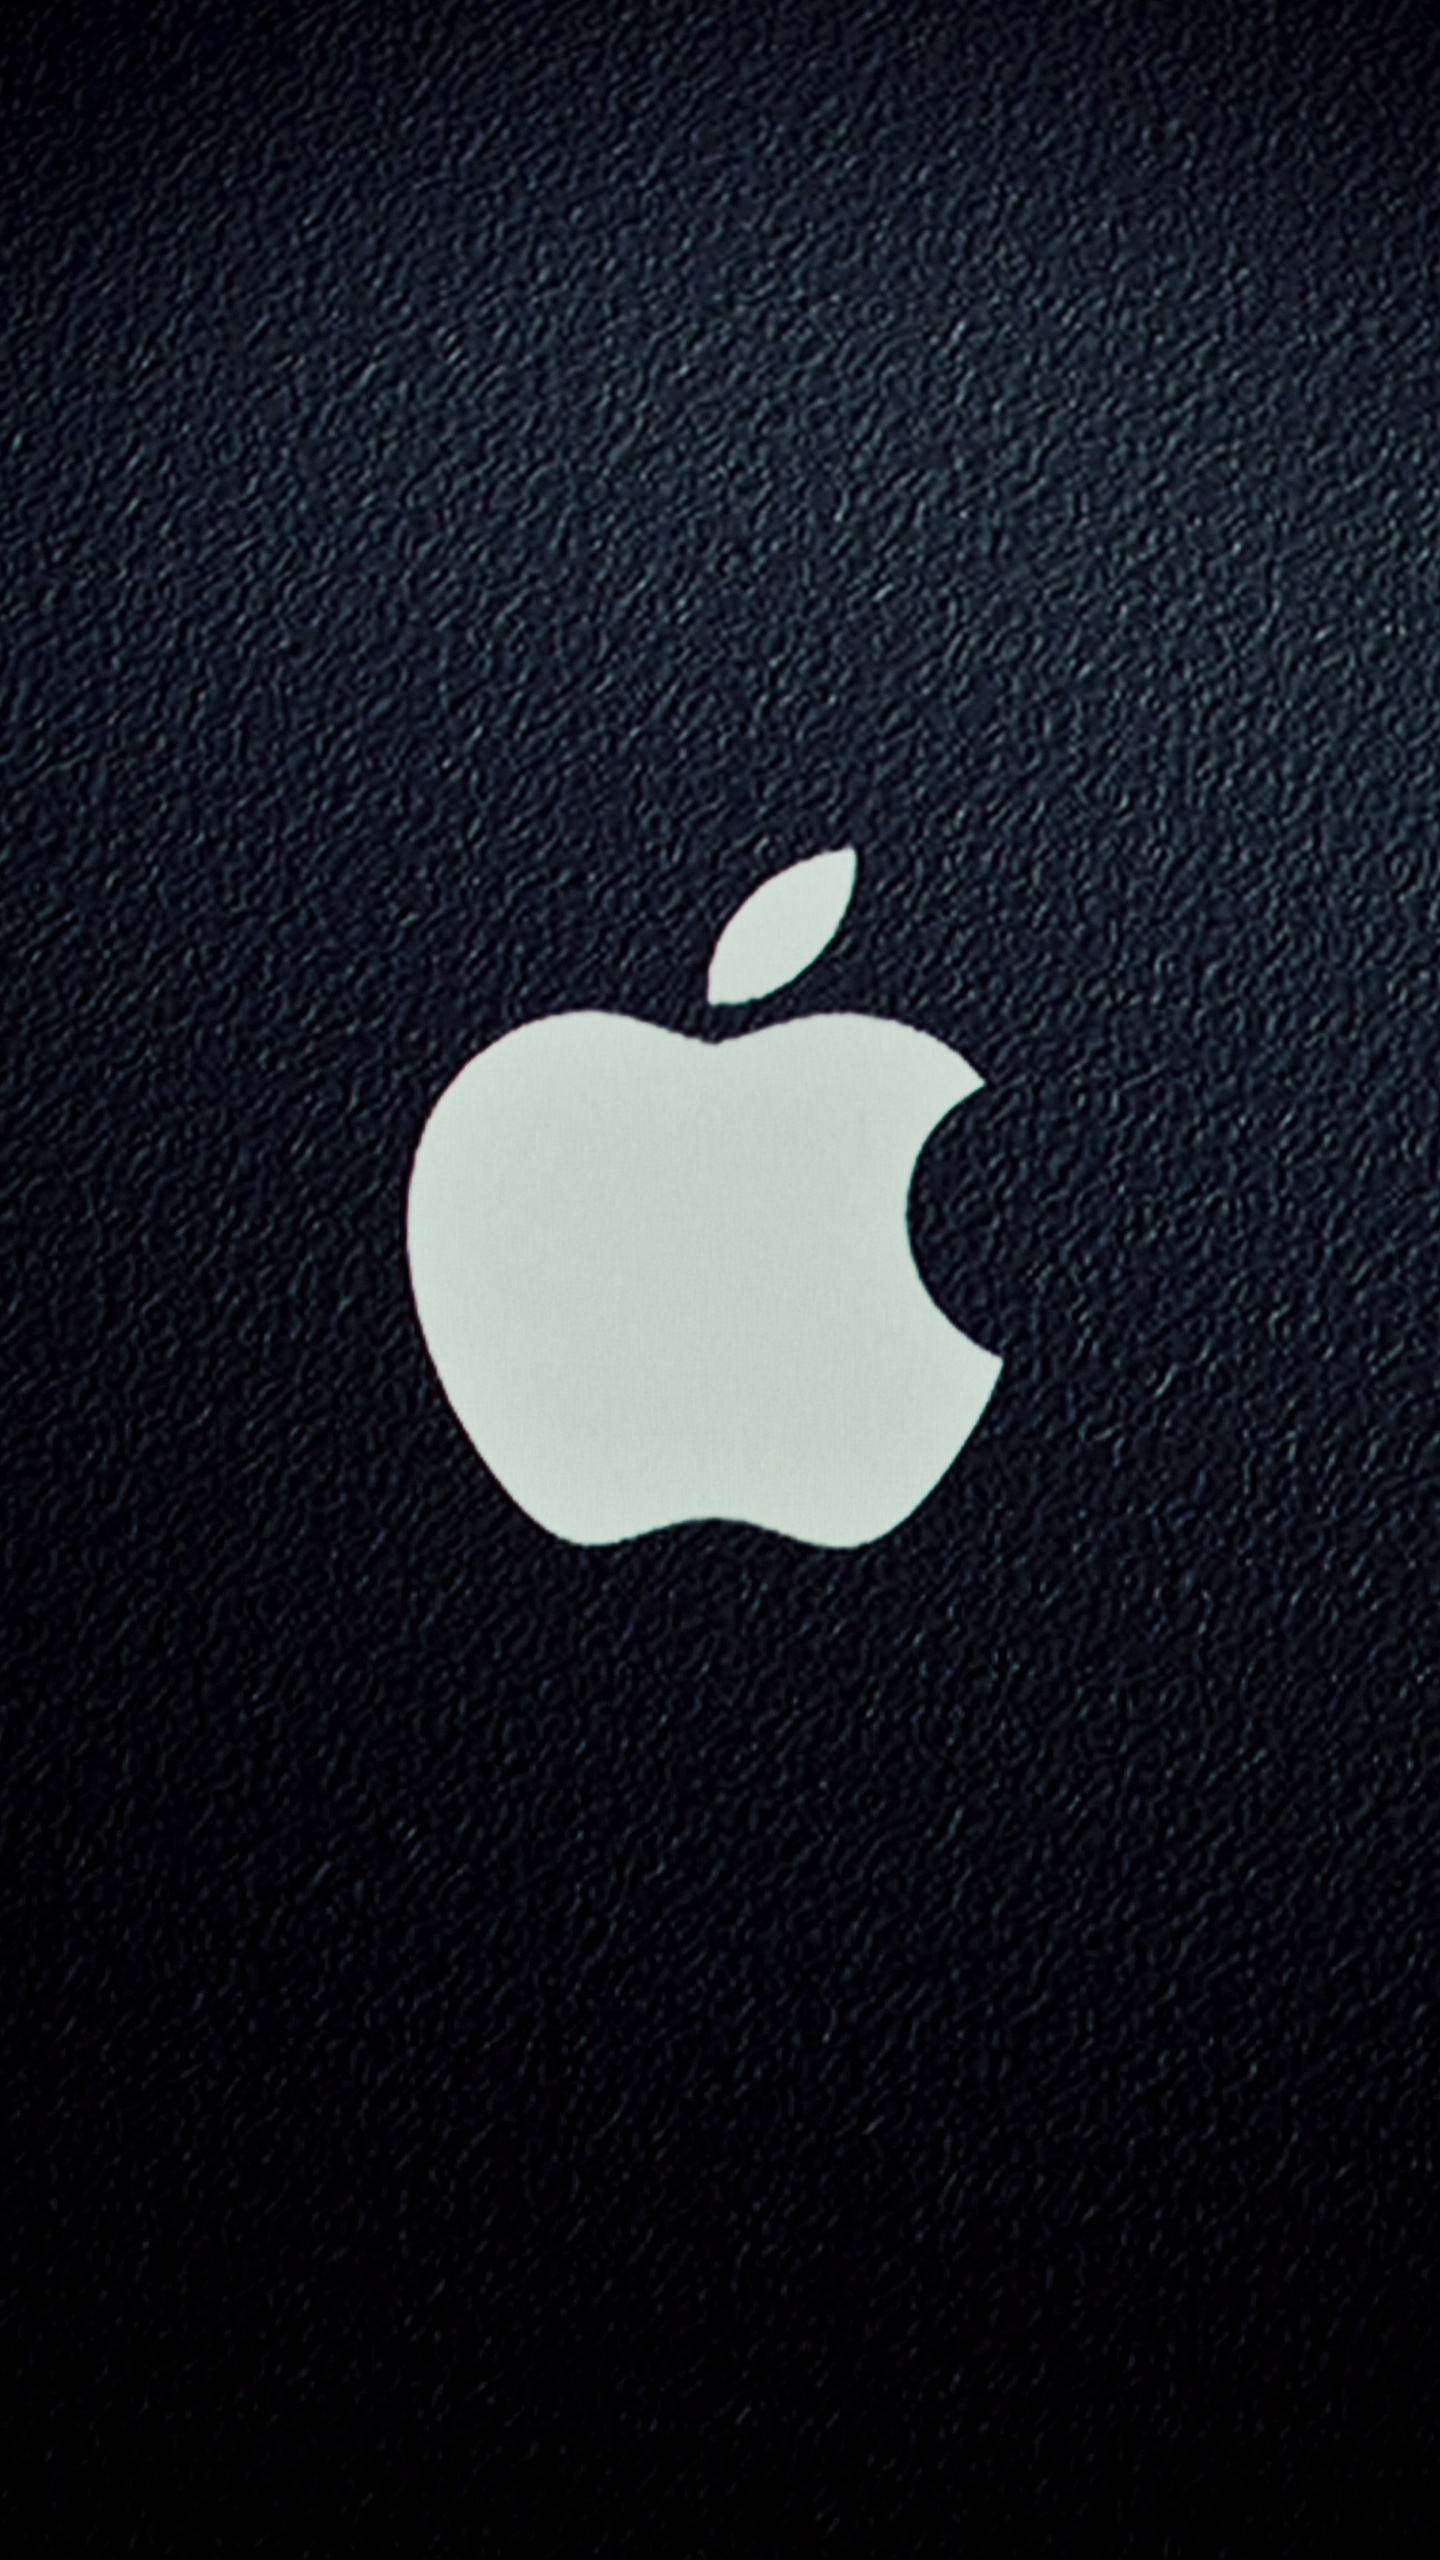 Аватарки на телефон айфон. Логотип Apple. Заставка на айфон оригинальная. Стильные обои на телефон. Яблоко айфон.